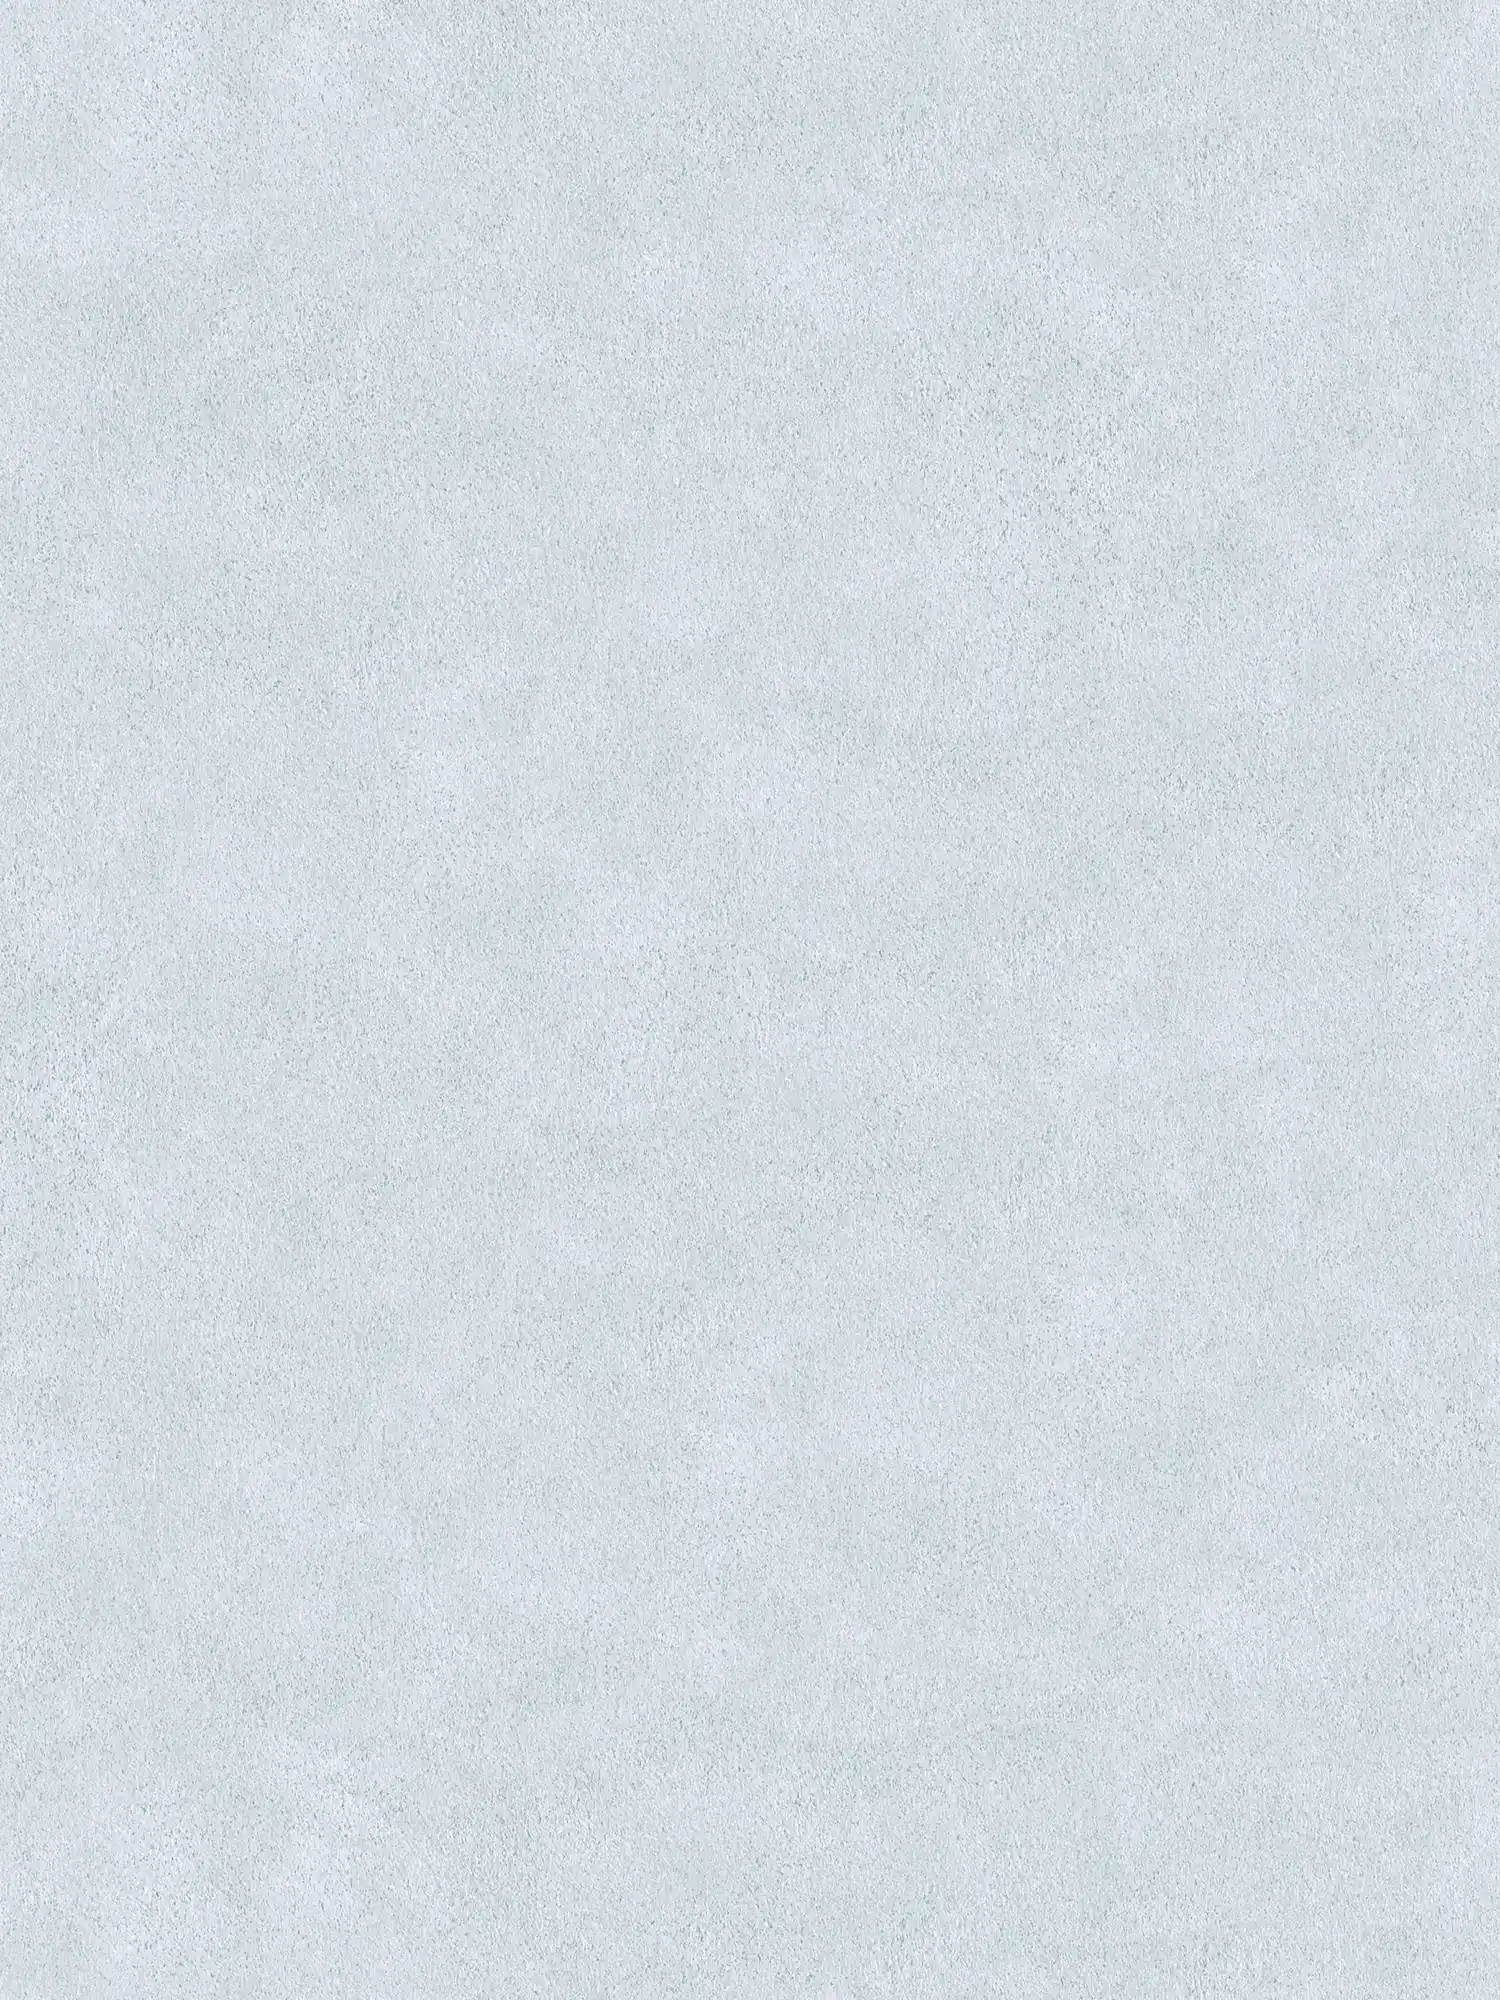 Carta da parati grigio chiaro con disegno effetto intonaco e colore screziato
